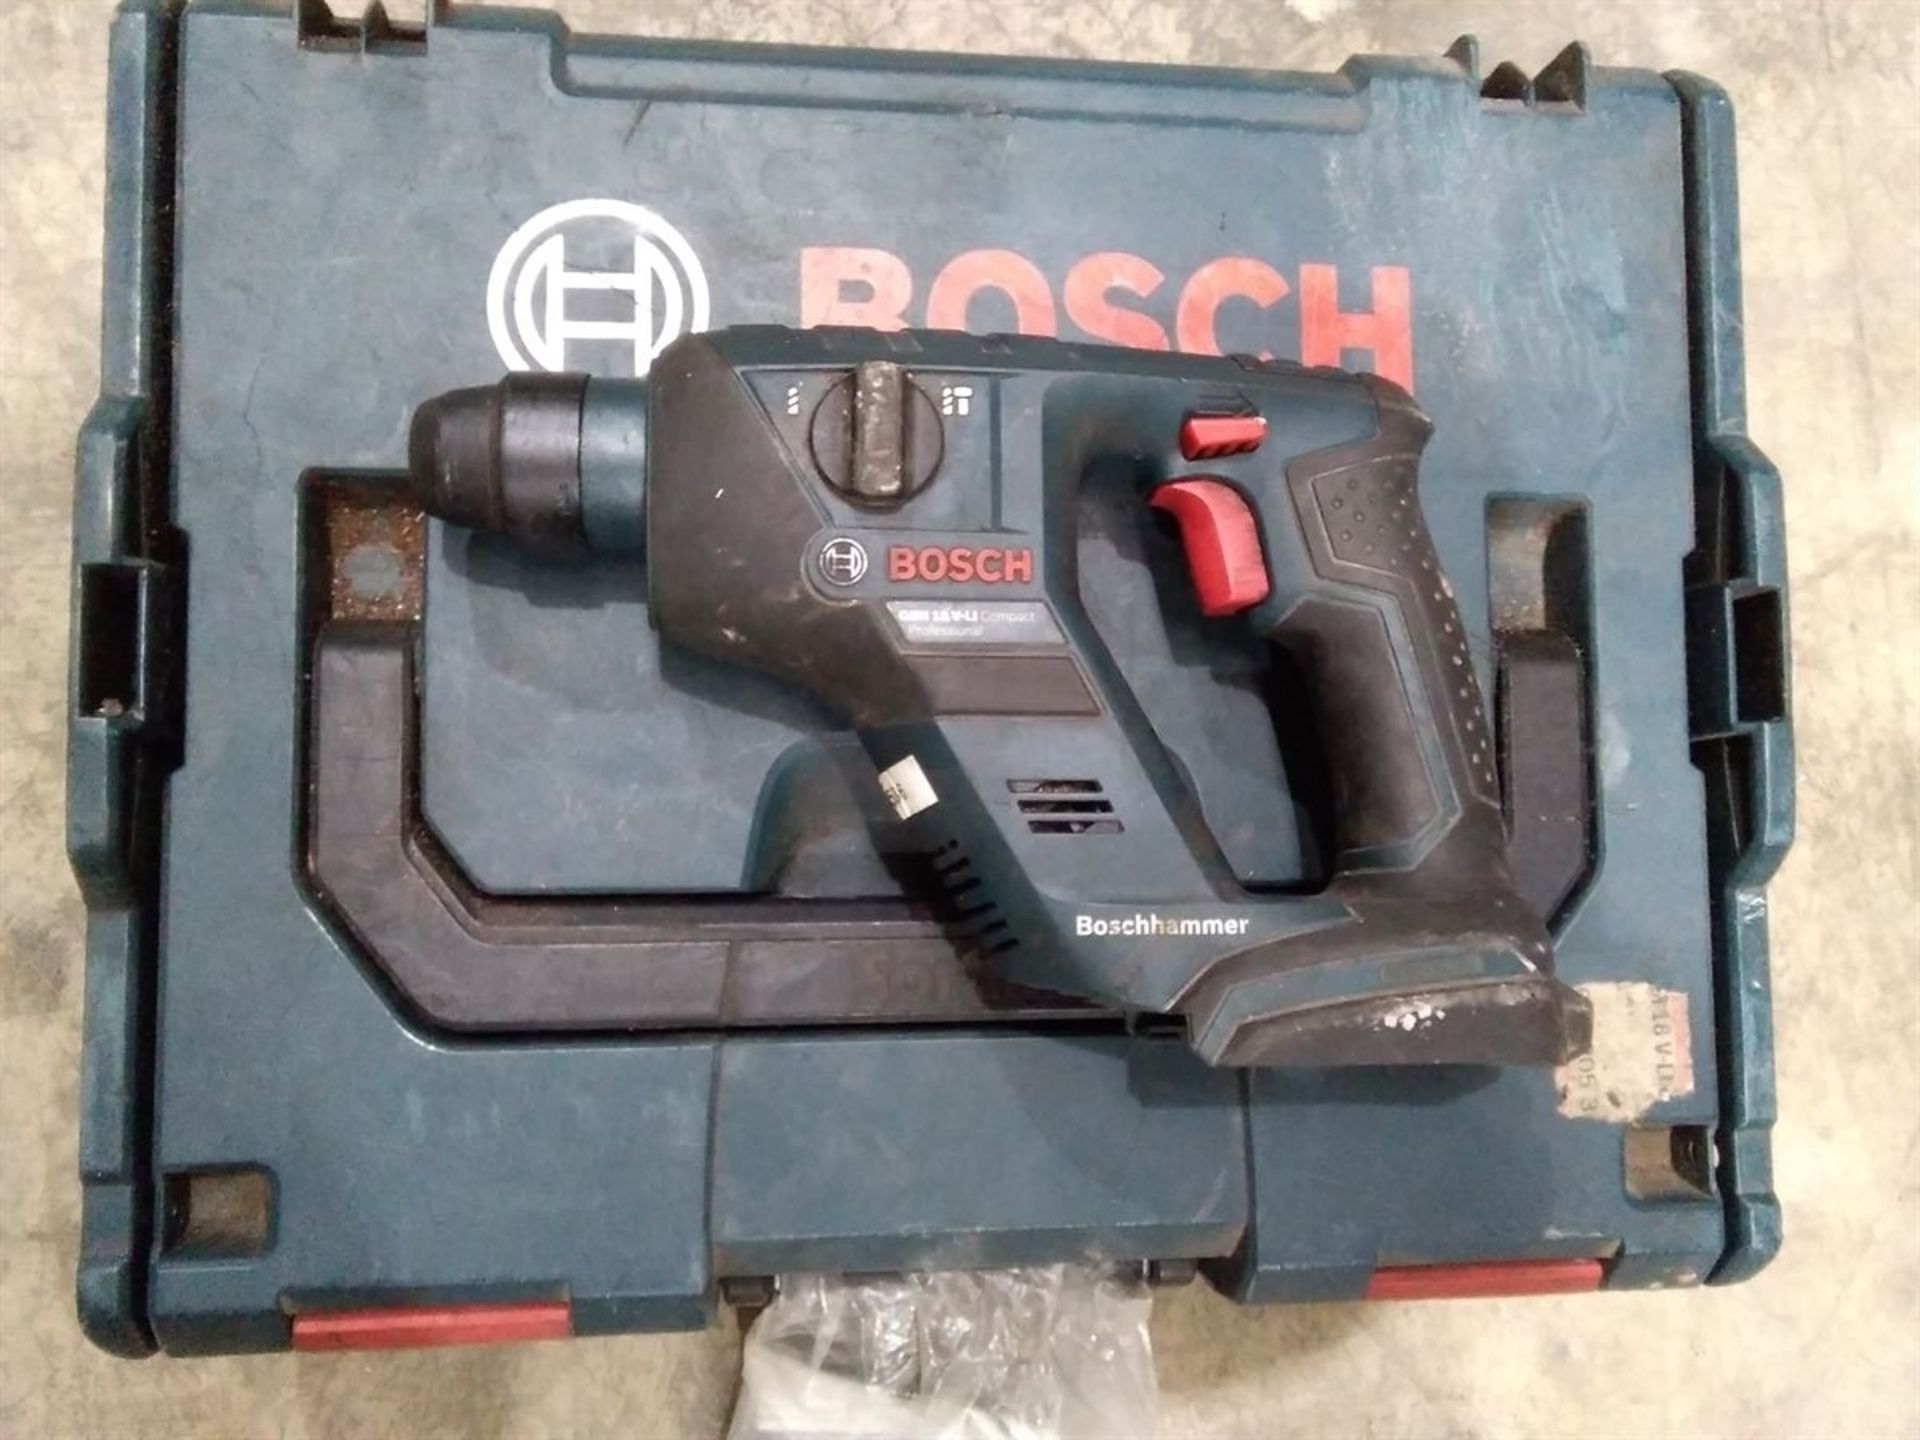 Bosch GBH 18 V-LI Cordless Hammer Drill